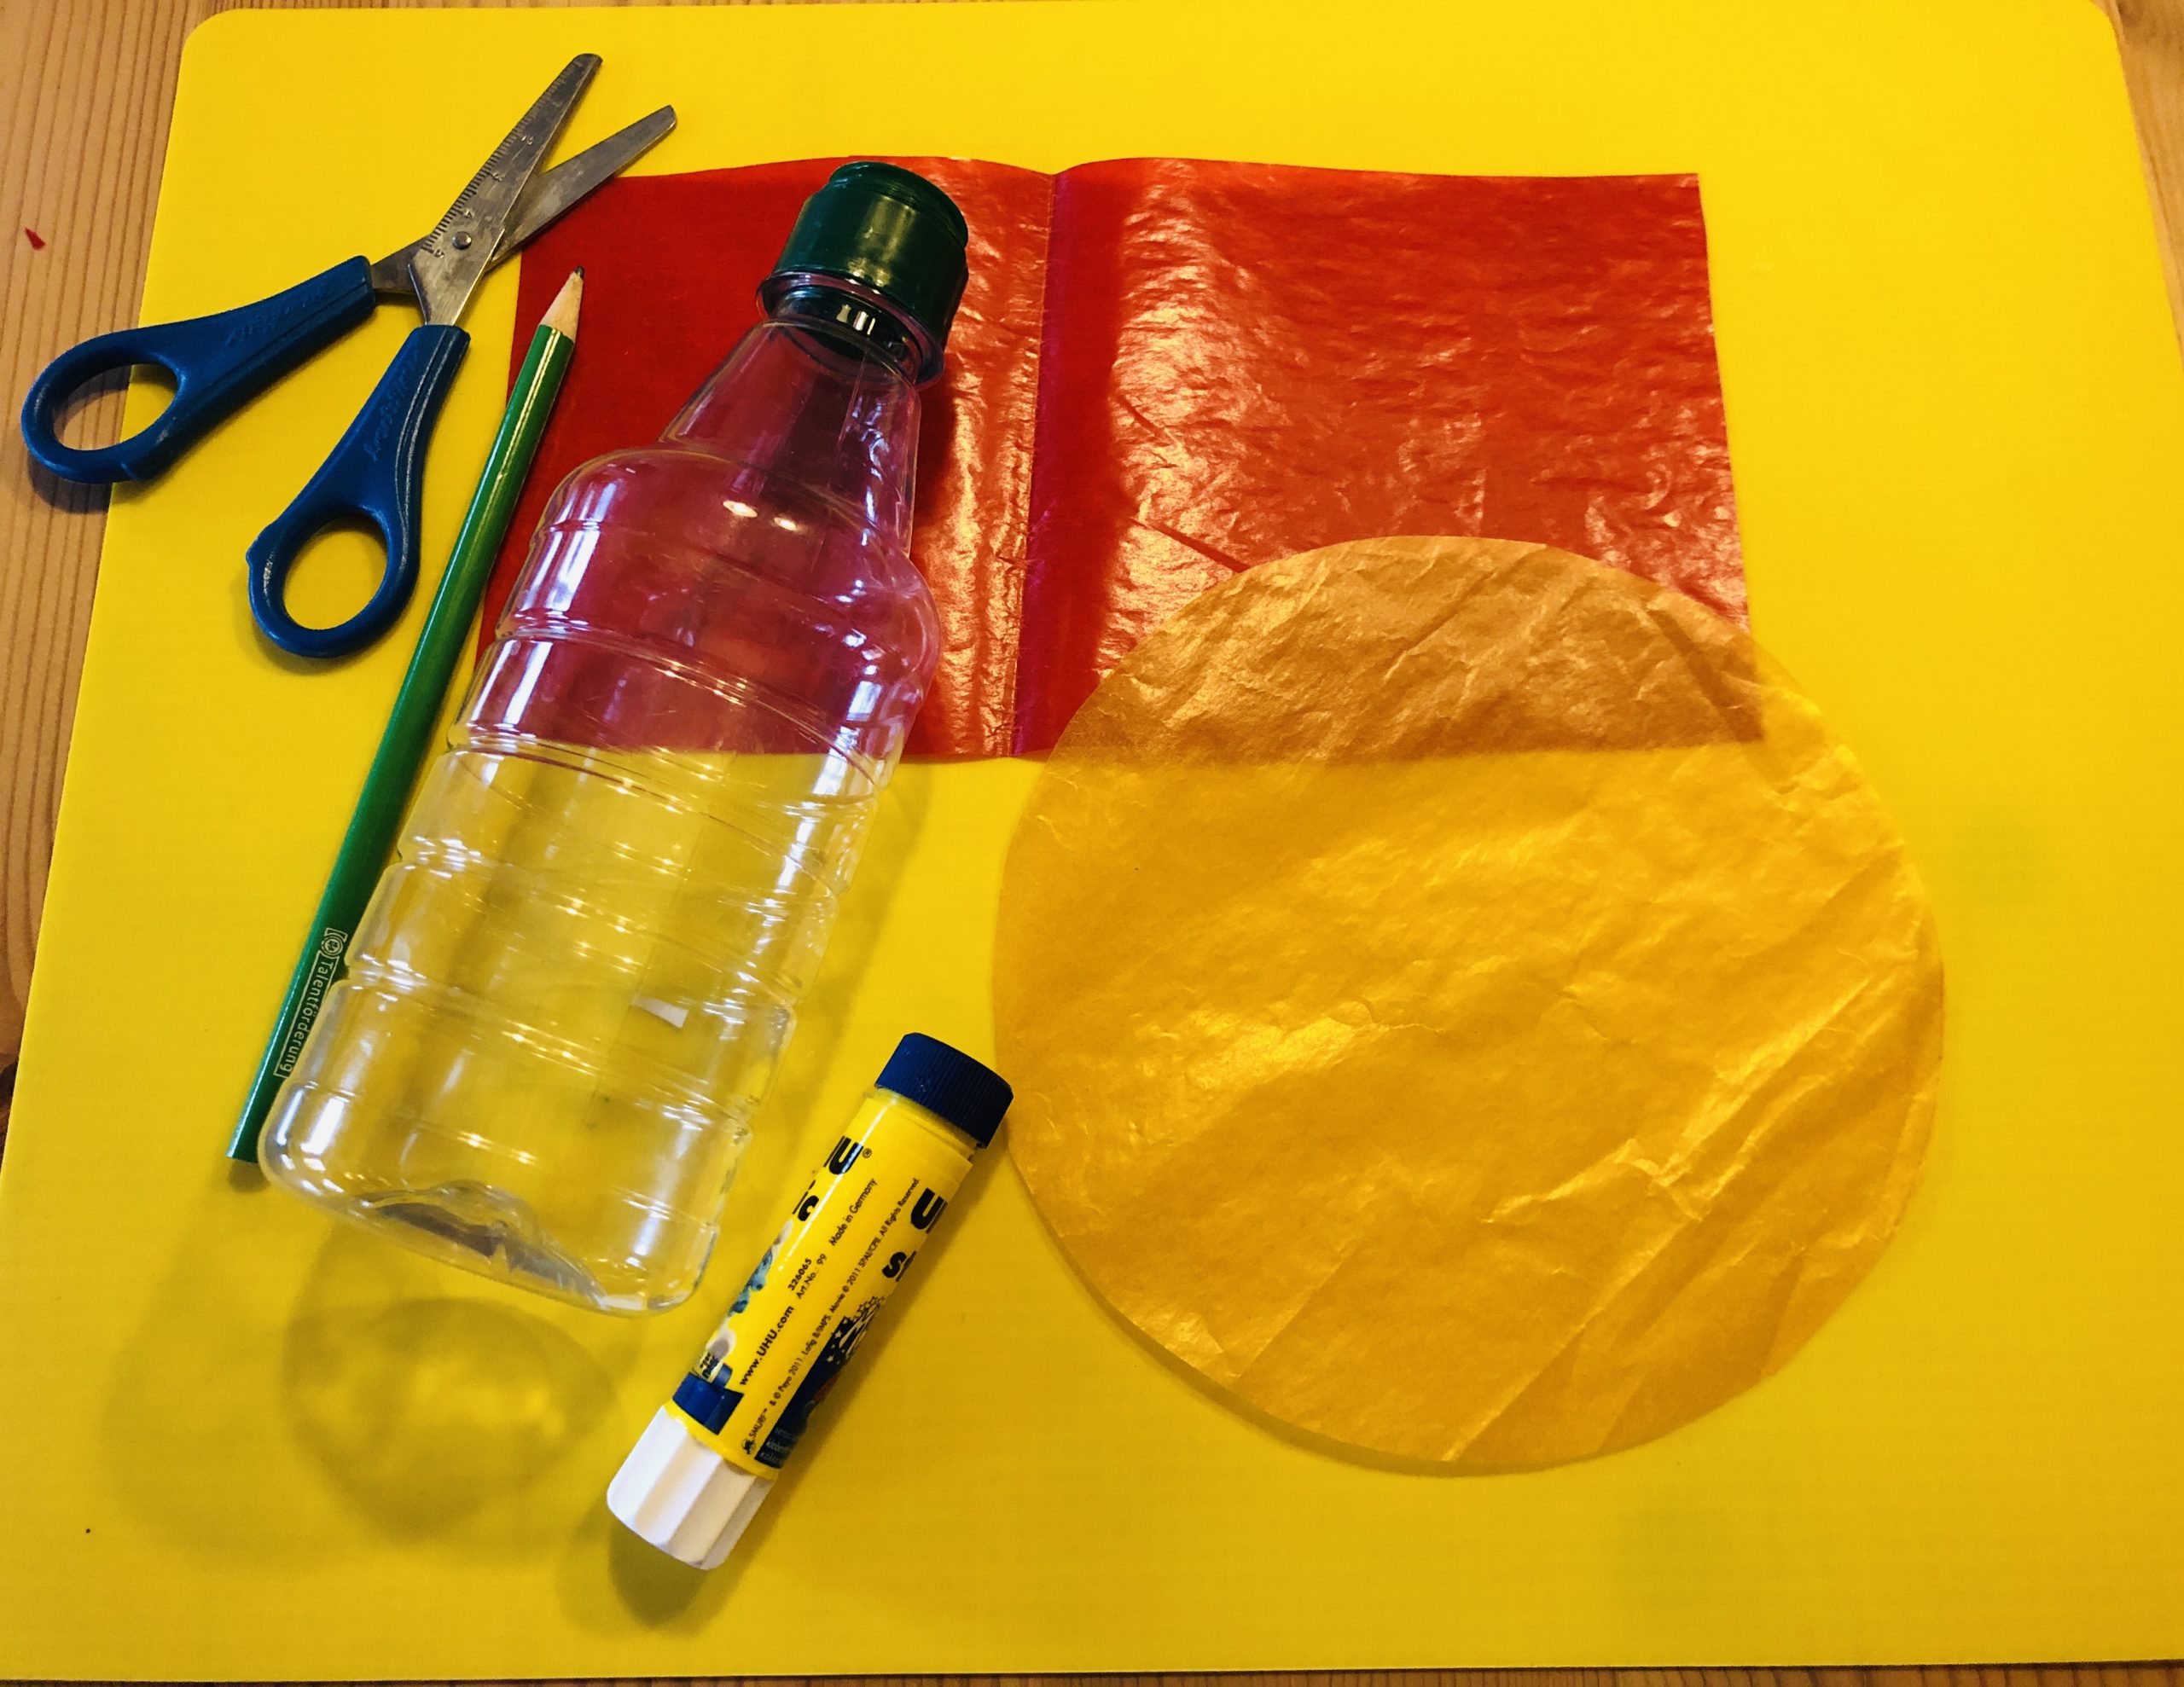 Bild zum Schritt 1 für das Bastel- und DIY-Abenteuer für Kinder: 'Legt die Materialien bereit.  Eine leere Flasche, Schere, Kleber,...'